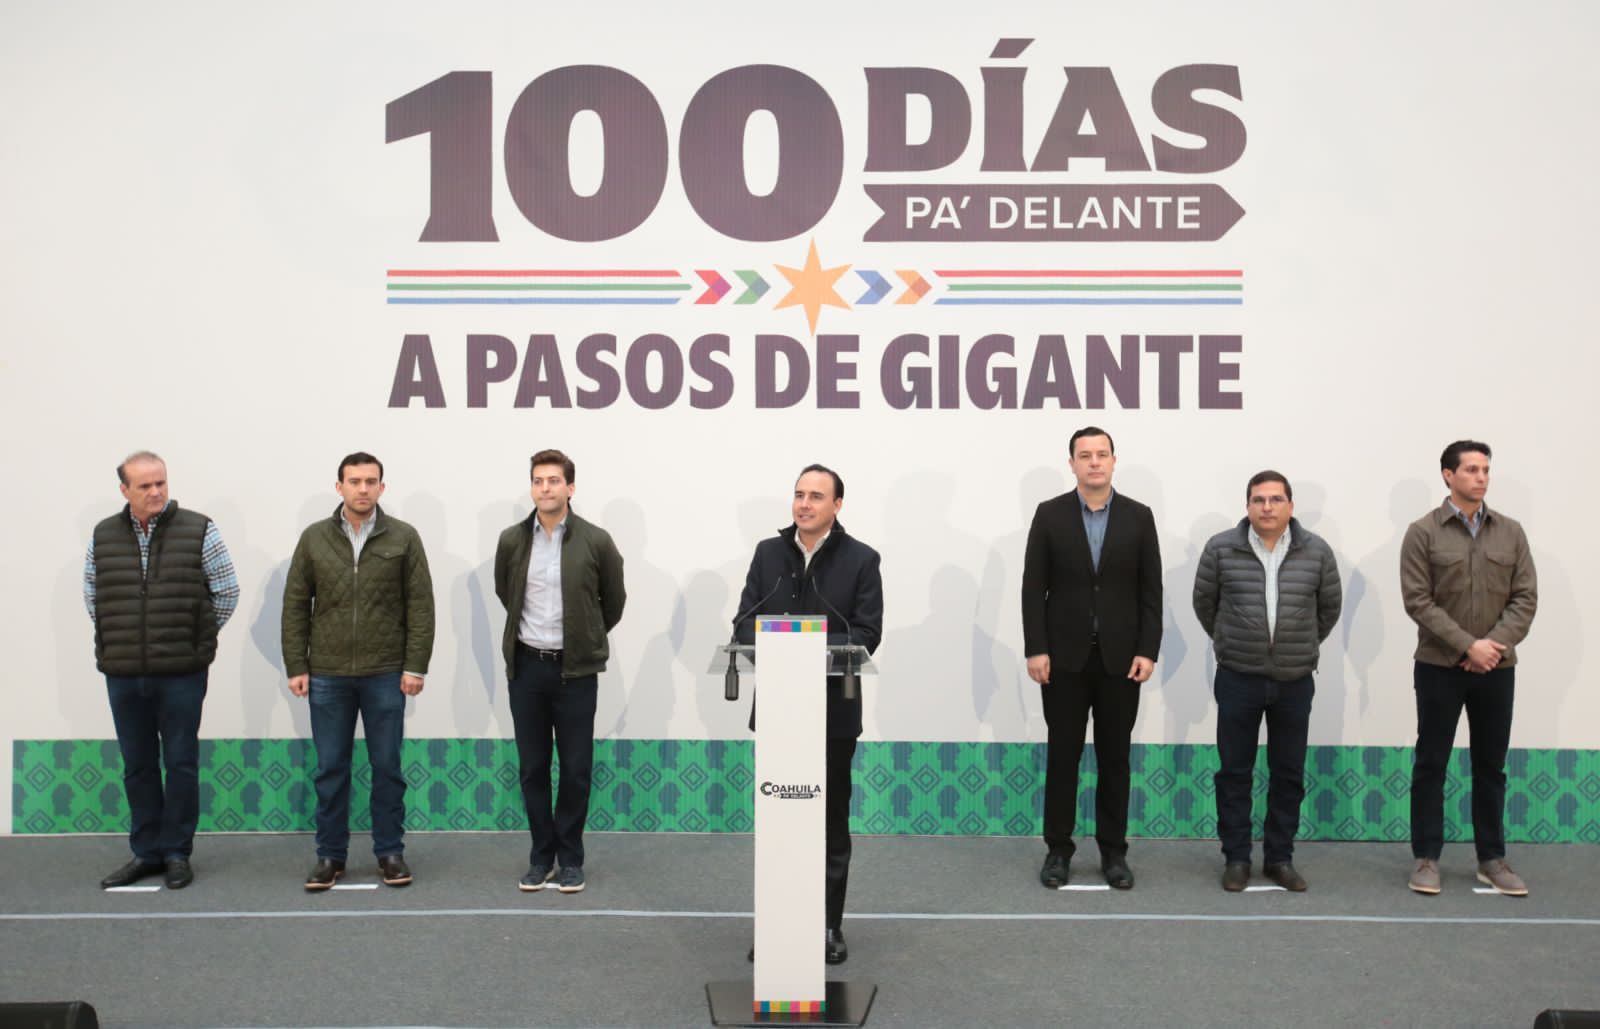 Arrancamos con todo, 100 días Pa’delante: Manolo Jiménez